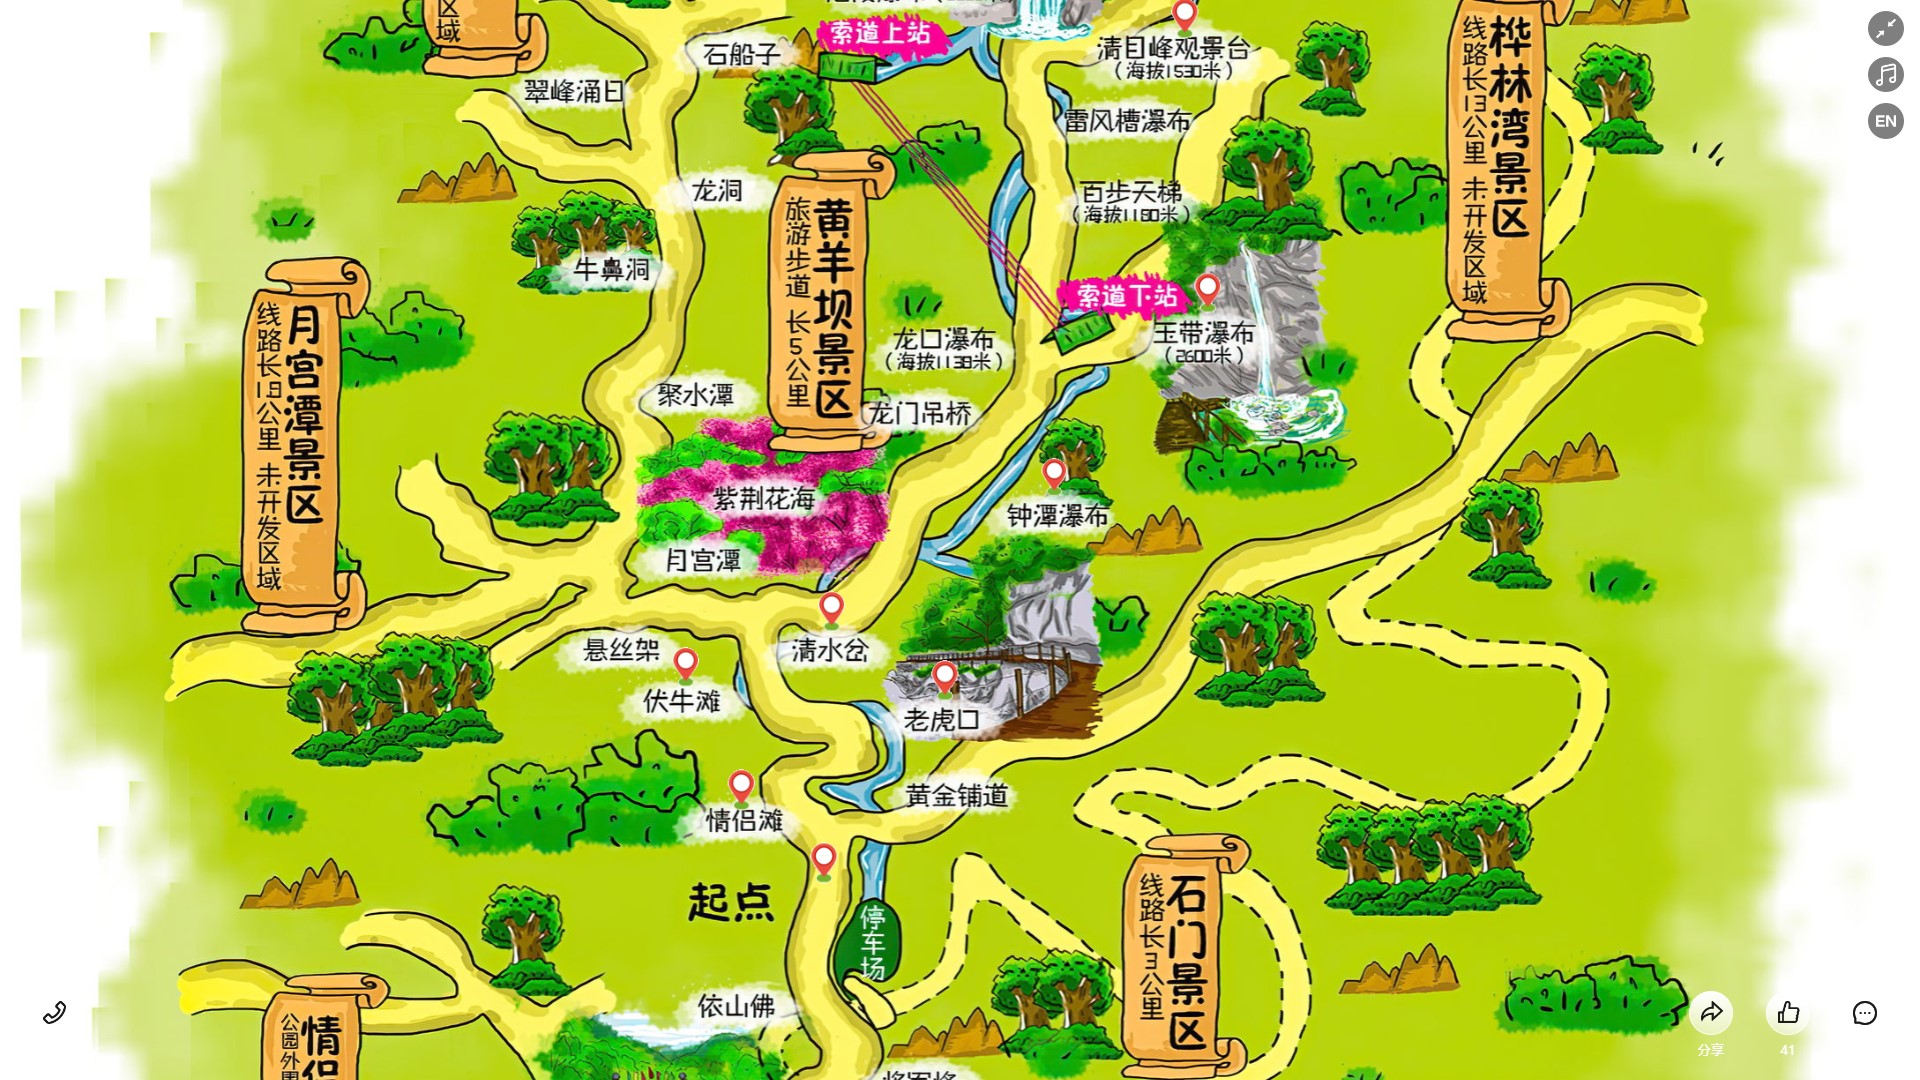 盂县景区导览系统